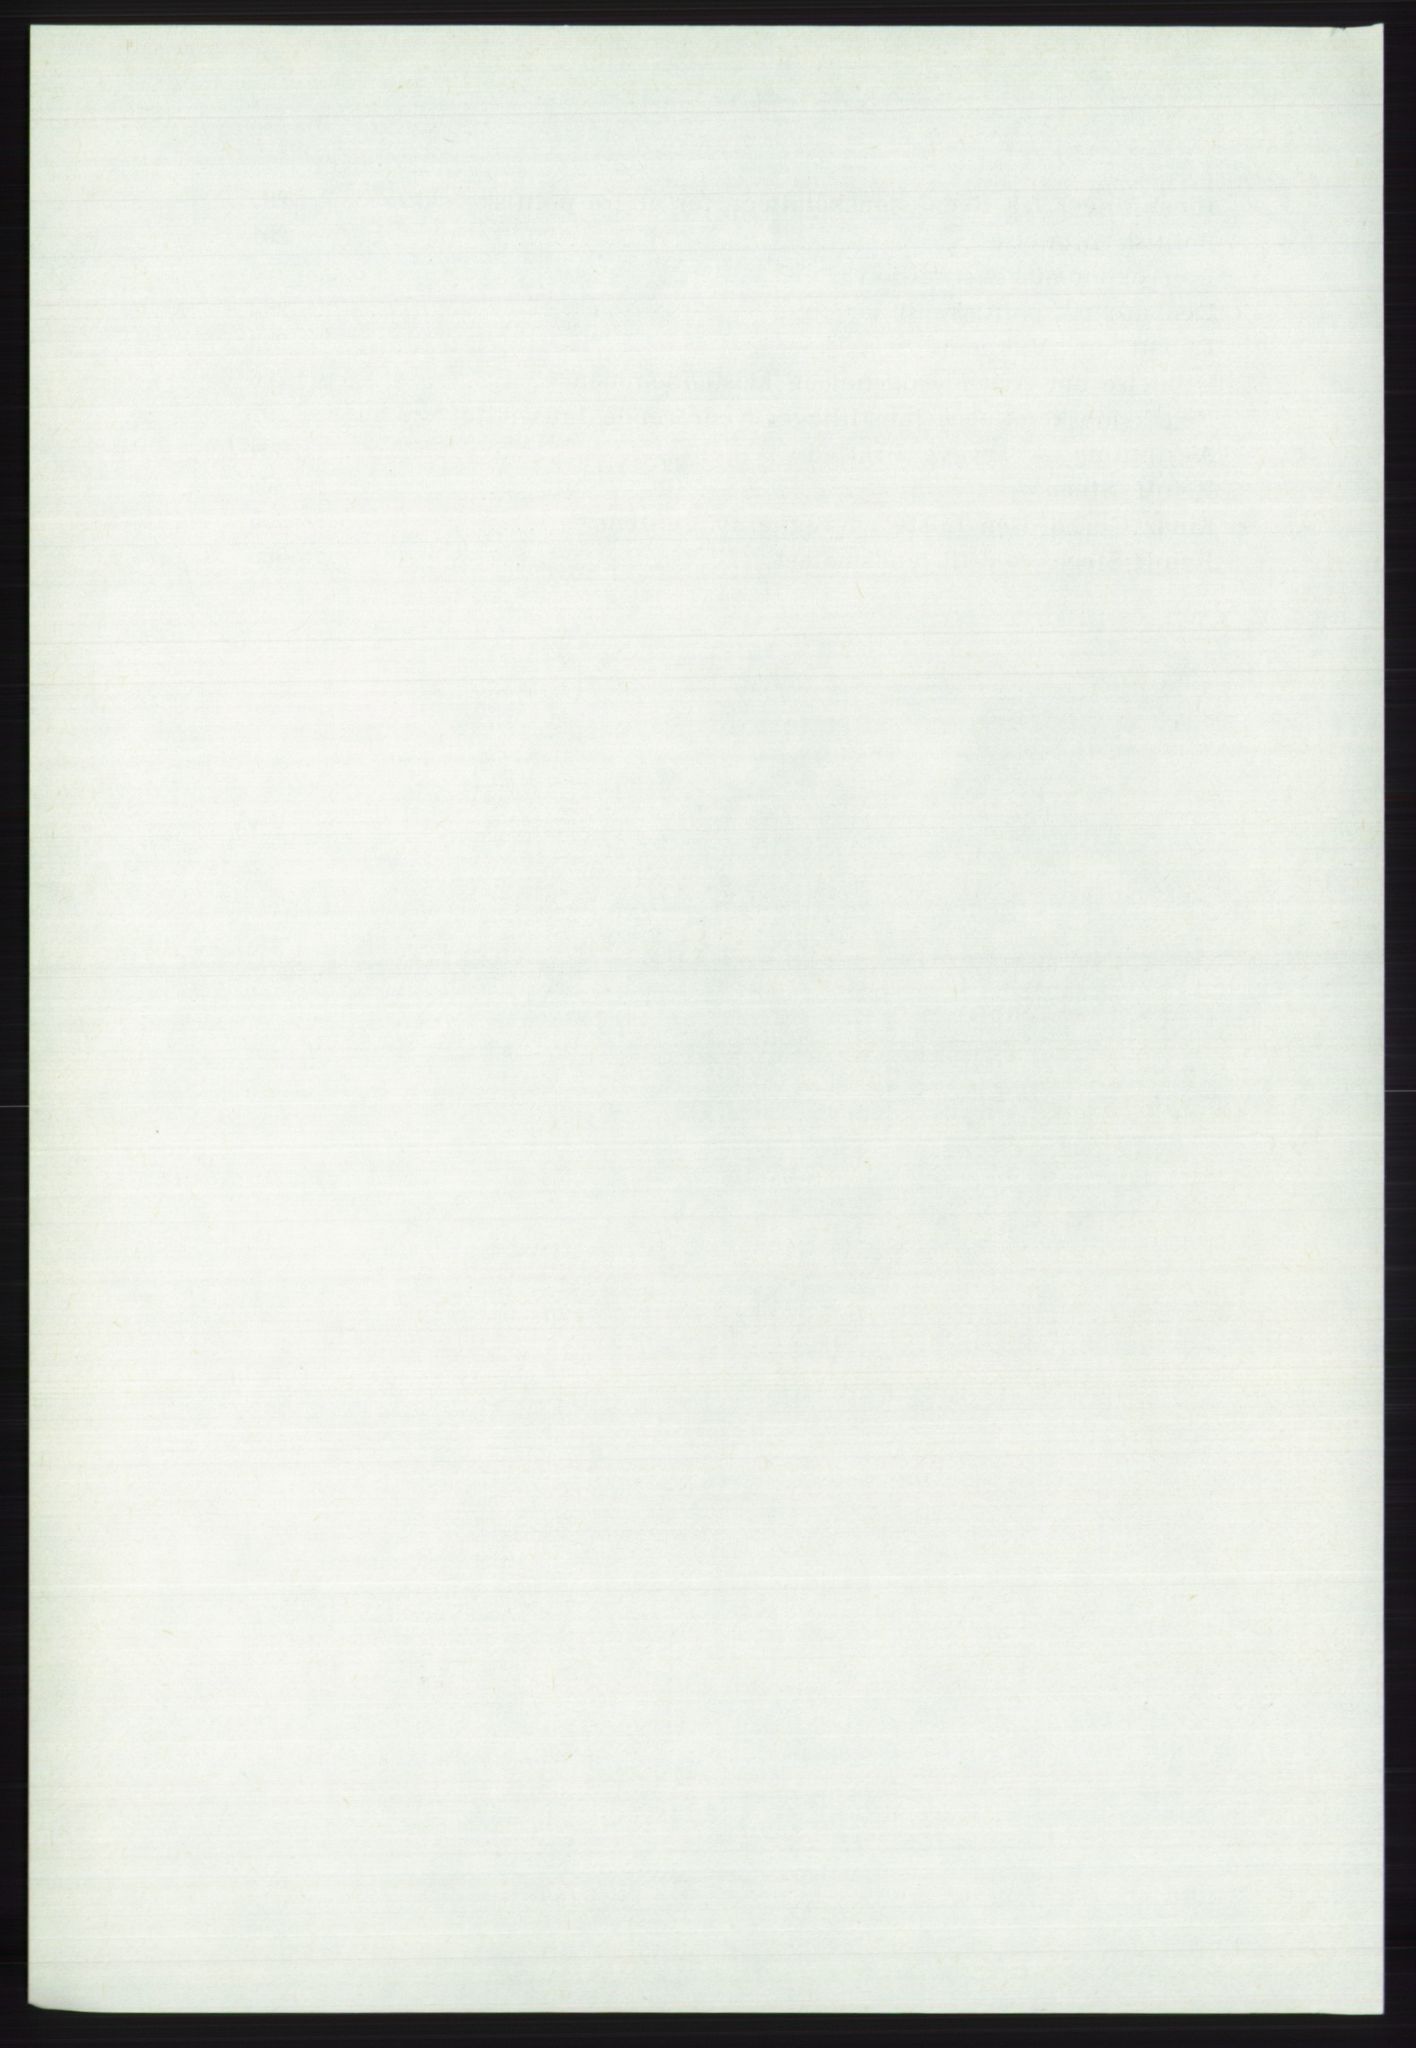 Det norske Arbeiderparti - publikasjoner, AAB/-/-/-: Protokoll over forhandlingene på det 46. ordinære landsmøte 20.-23. april 1975, 1975, s. 6